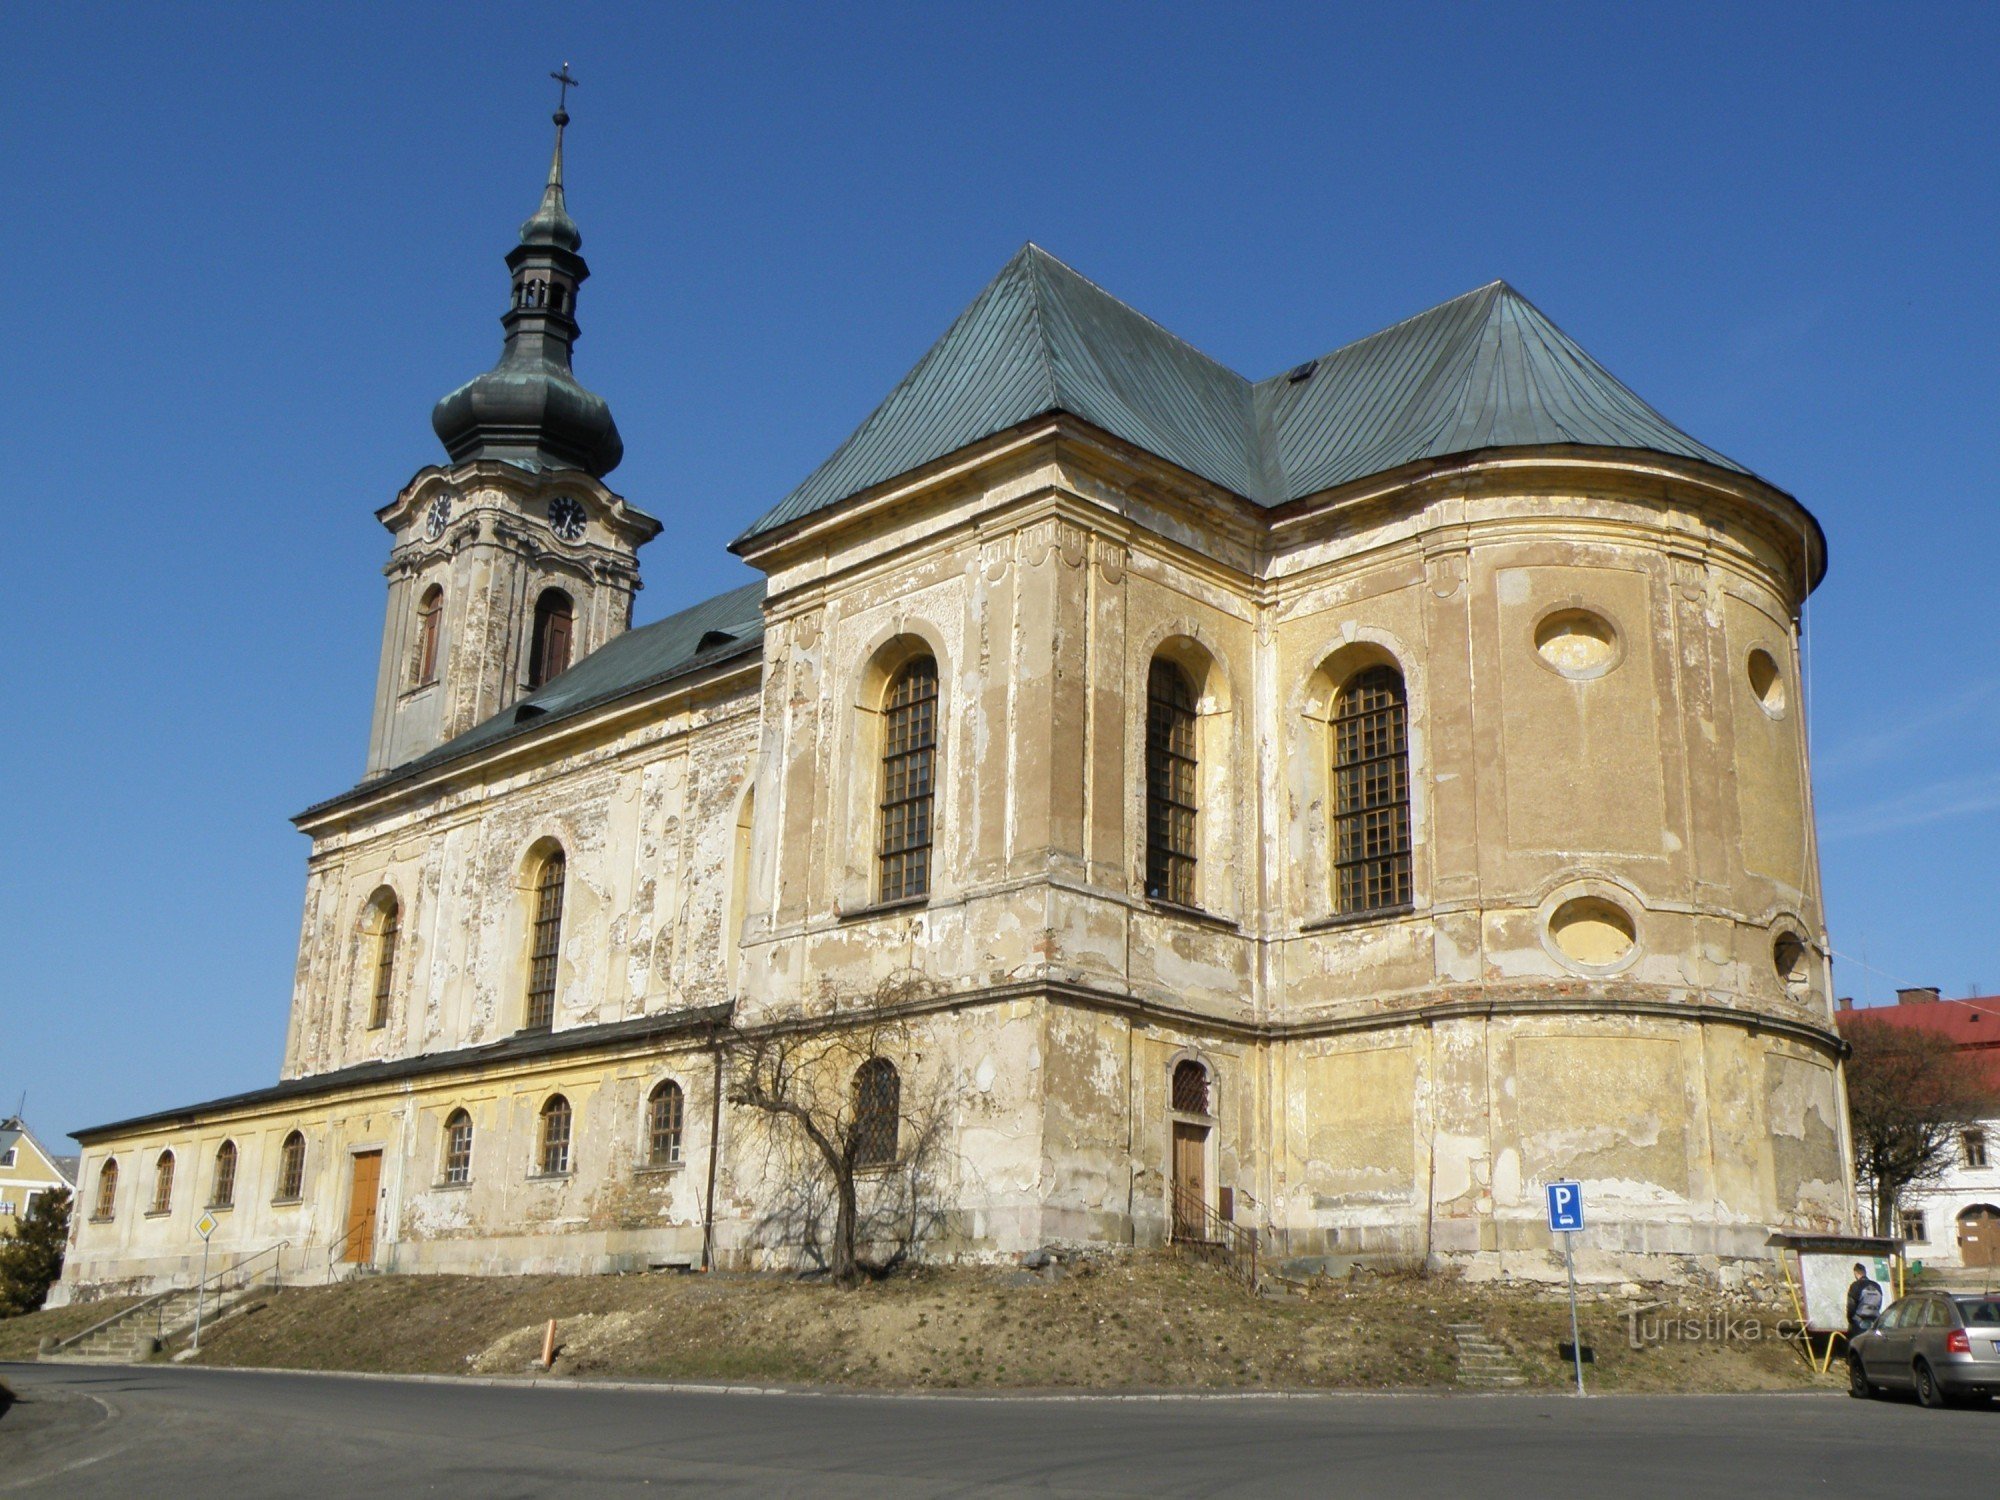 Kościół dziekański św. Giljí, zbudowany w latach 1762-1765 przez budowniczego V. Hausmanna